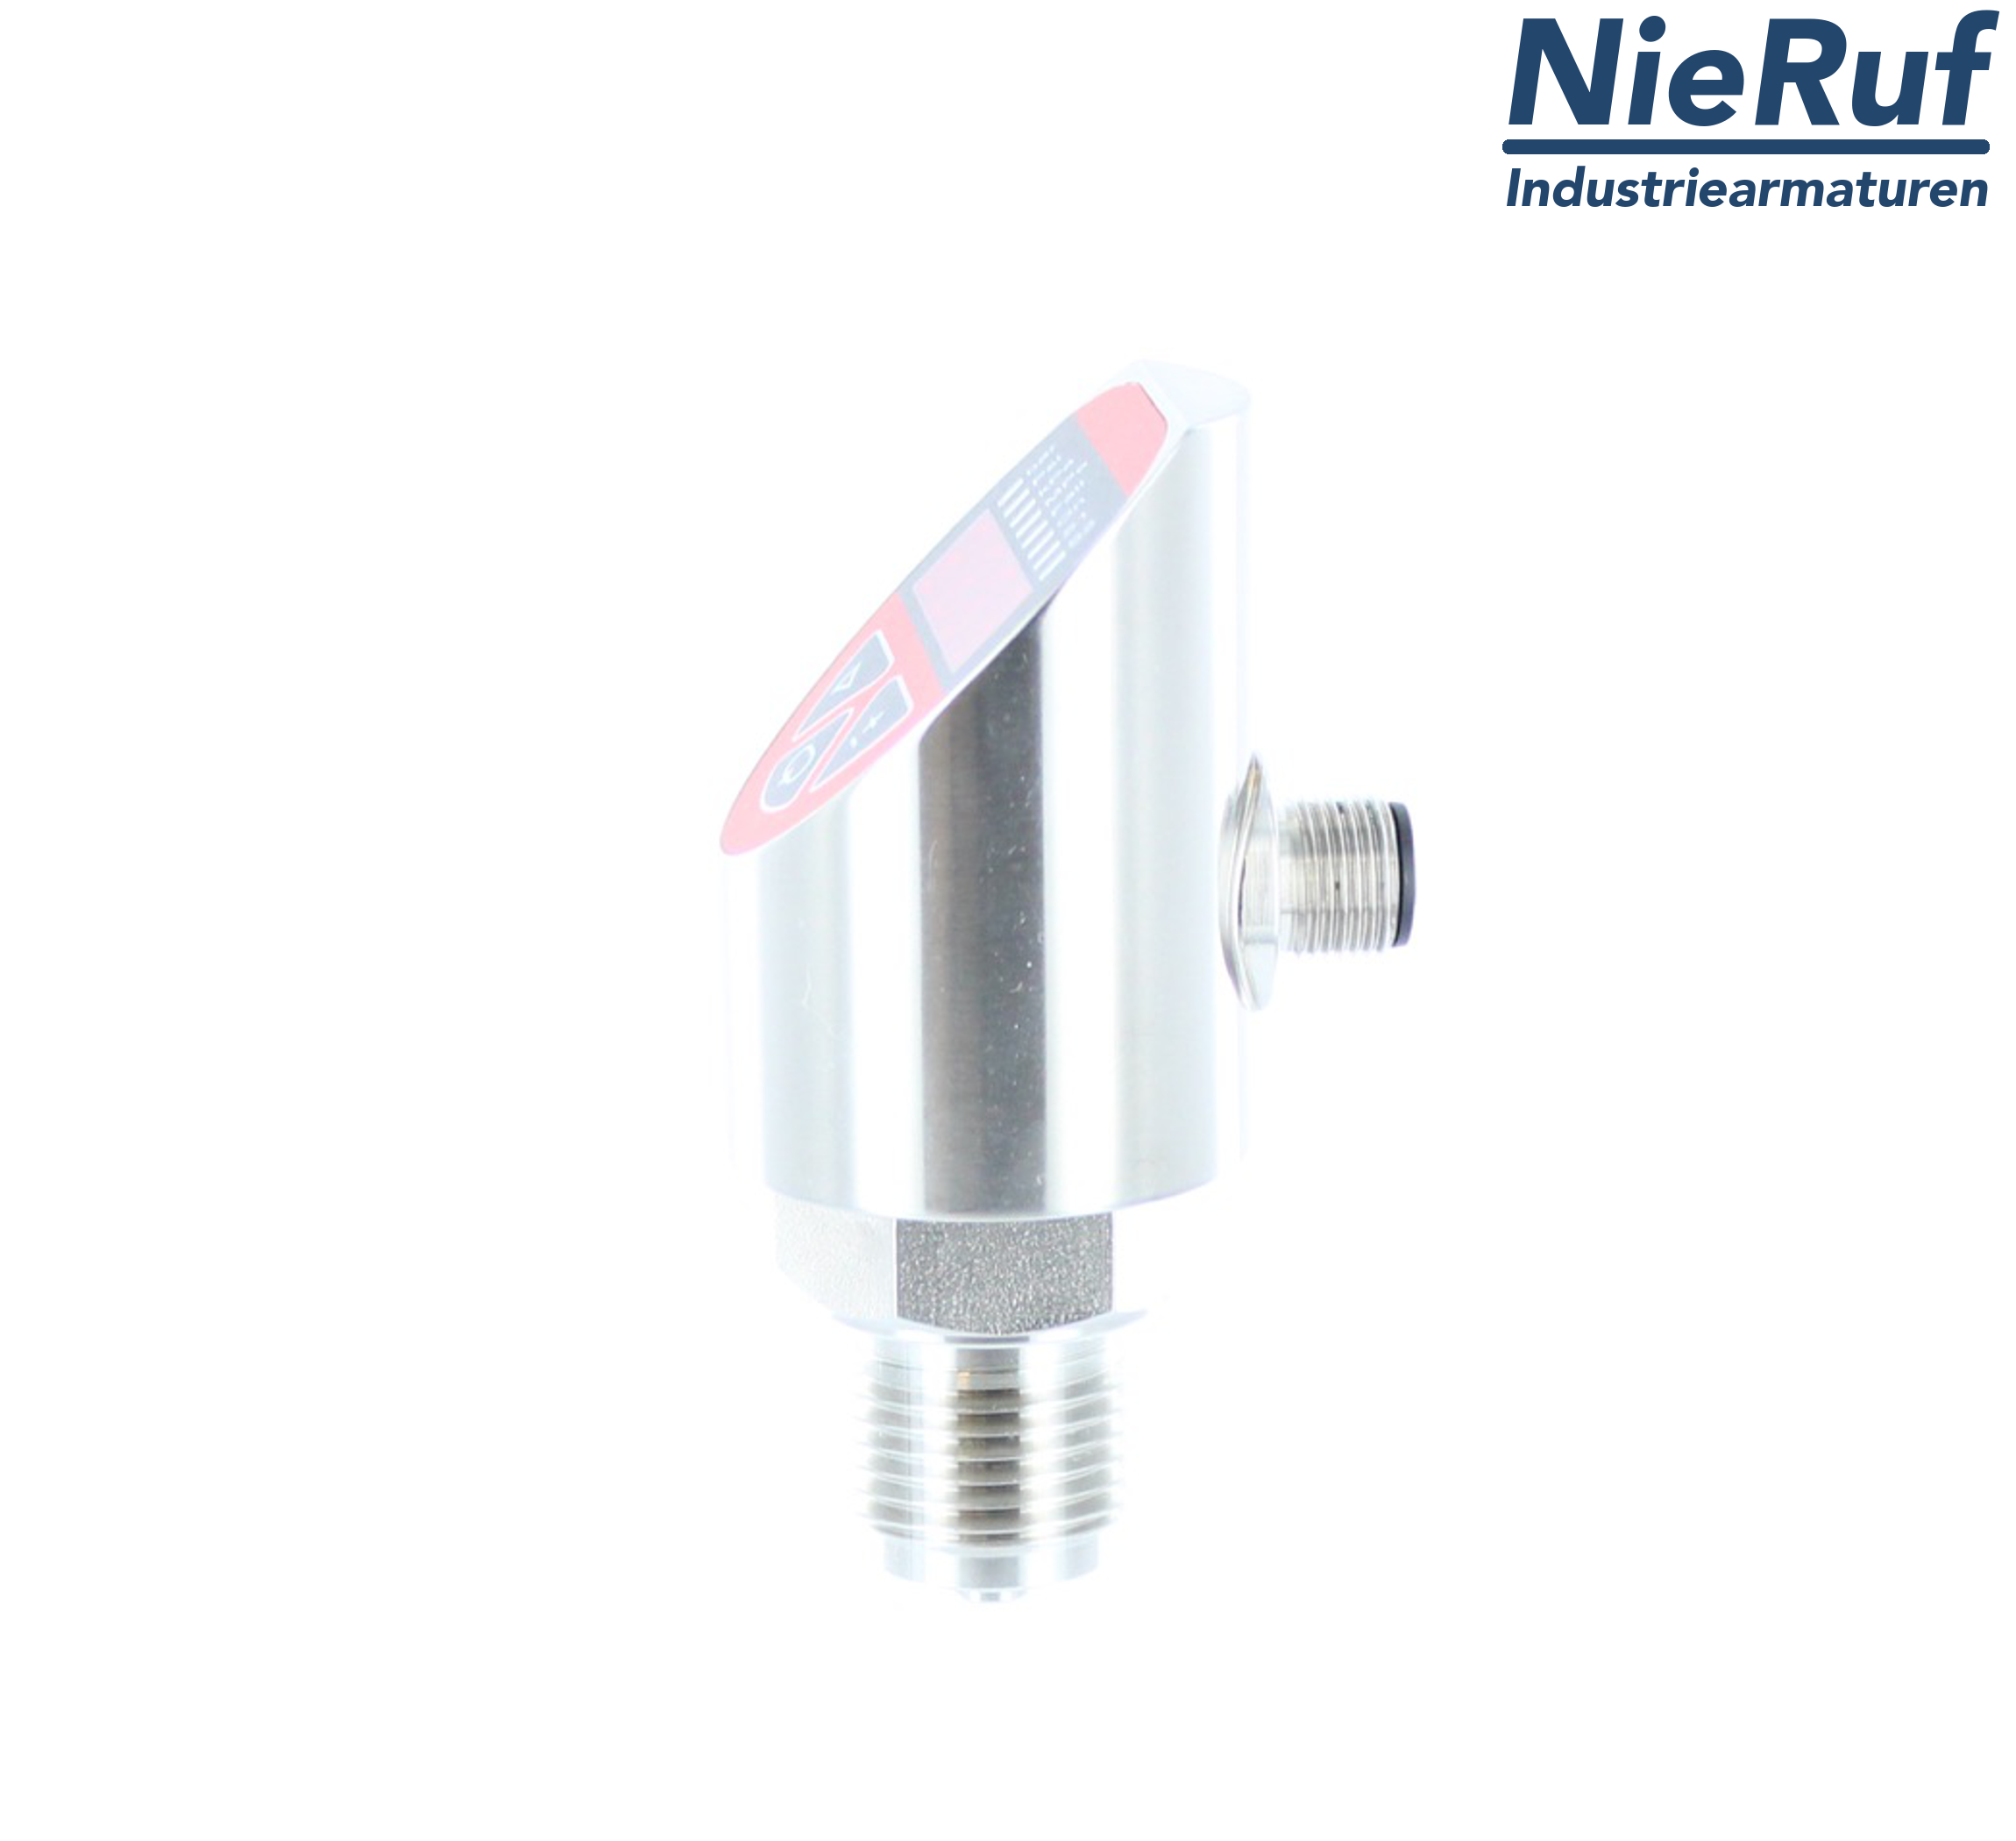 digital pressure sensor G 1/2" B 5-wire: 2xPNP, 1x4 - 20mA FPM 0,0 - 4,0 bar